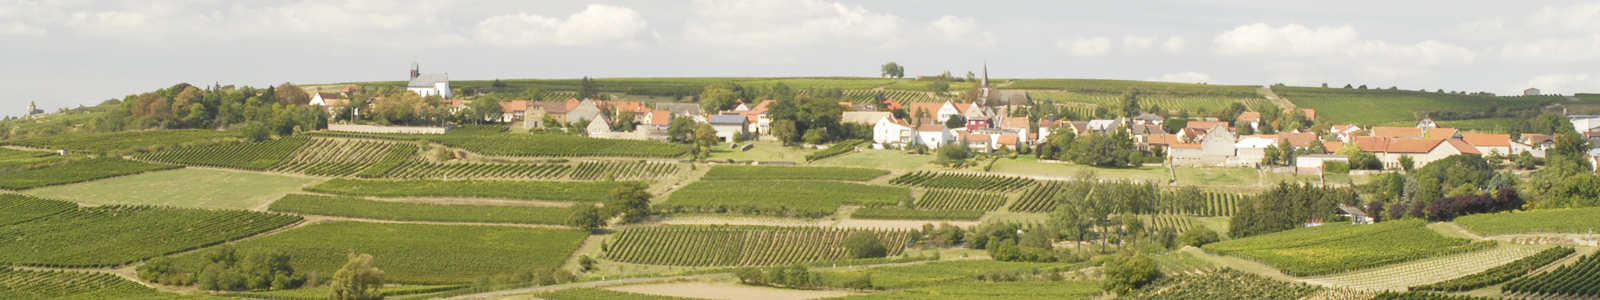 Landschaftsbild mit Dorf im Hintergrund ©Feuerbach